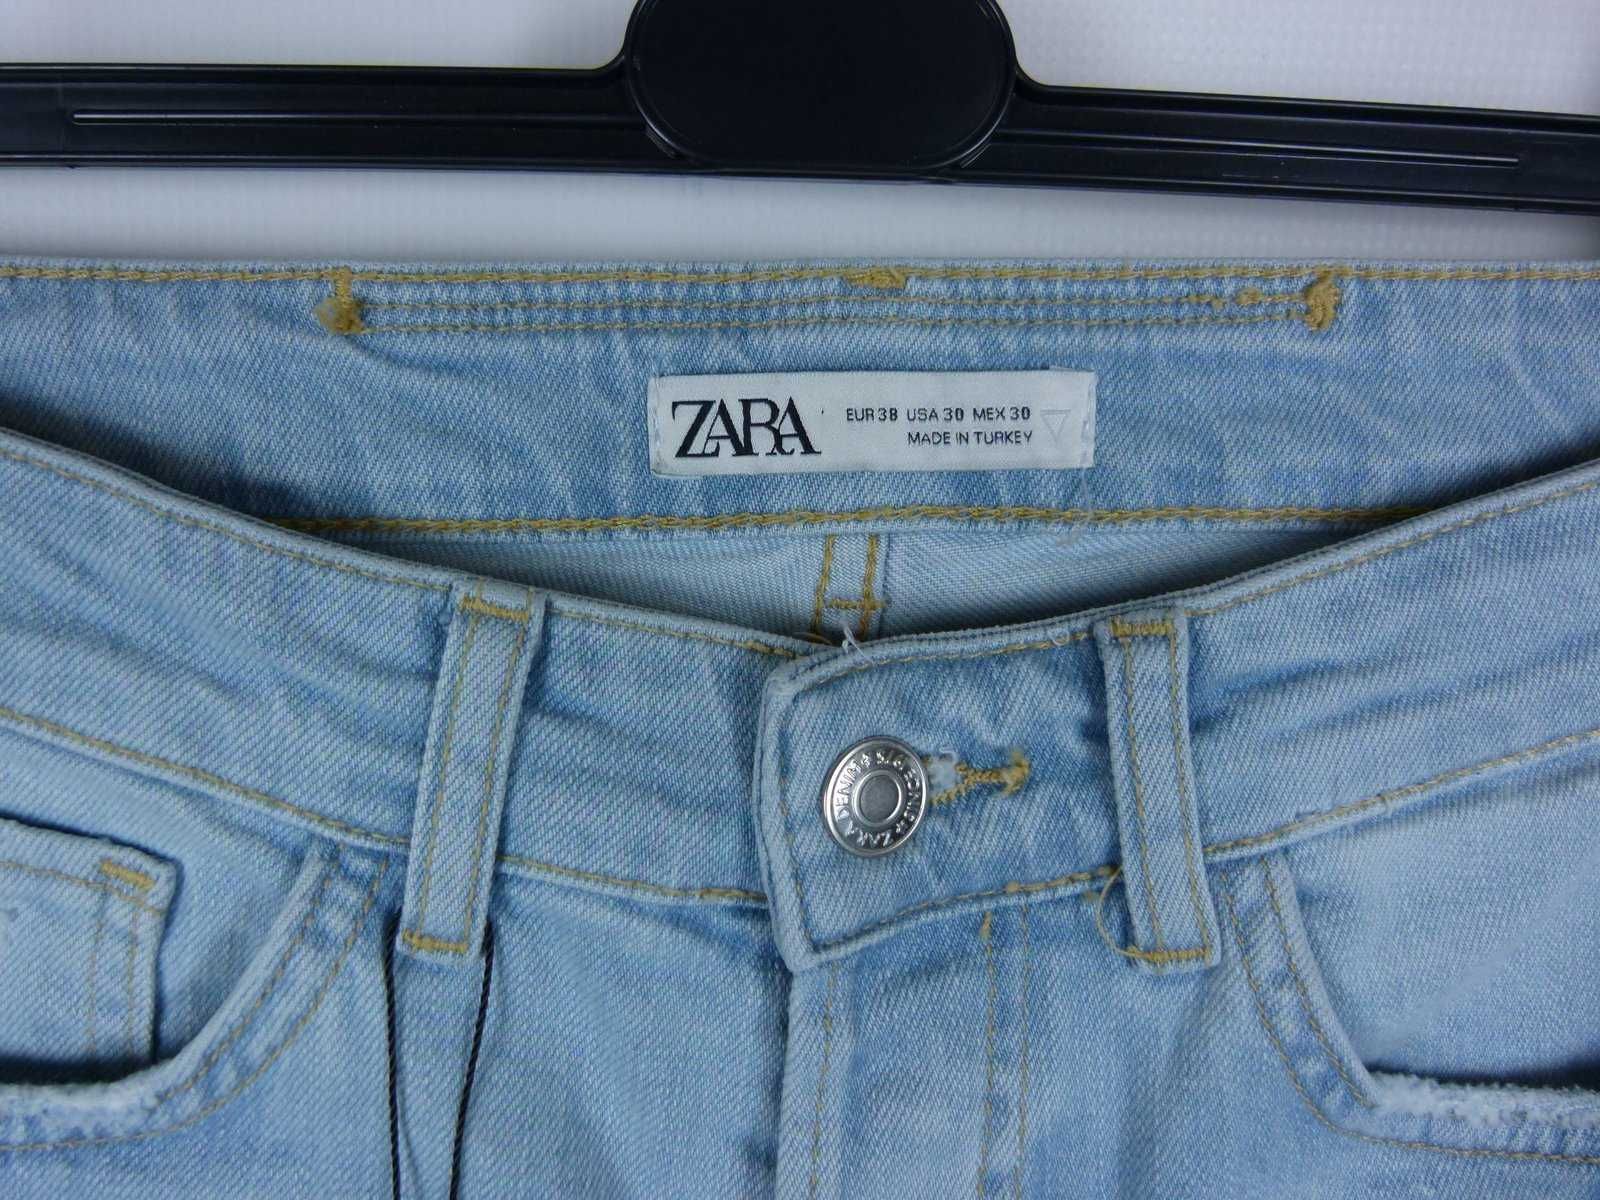 ZARA spodnie jeans dziury - 38 mex.30 z metką